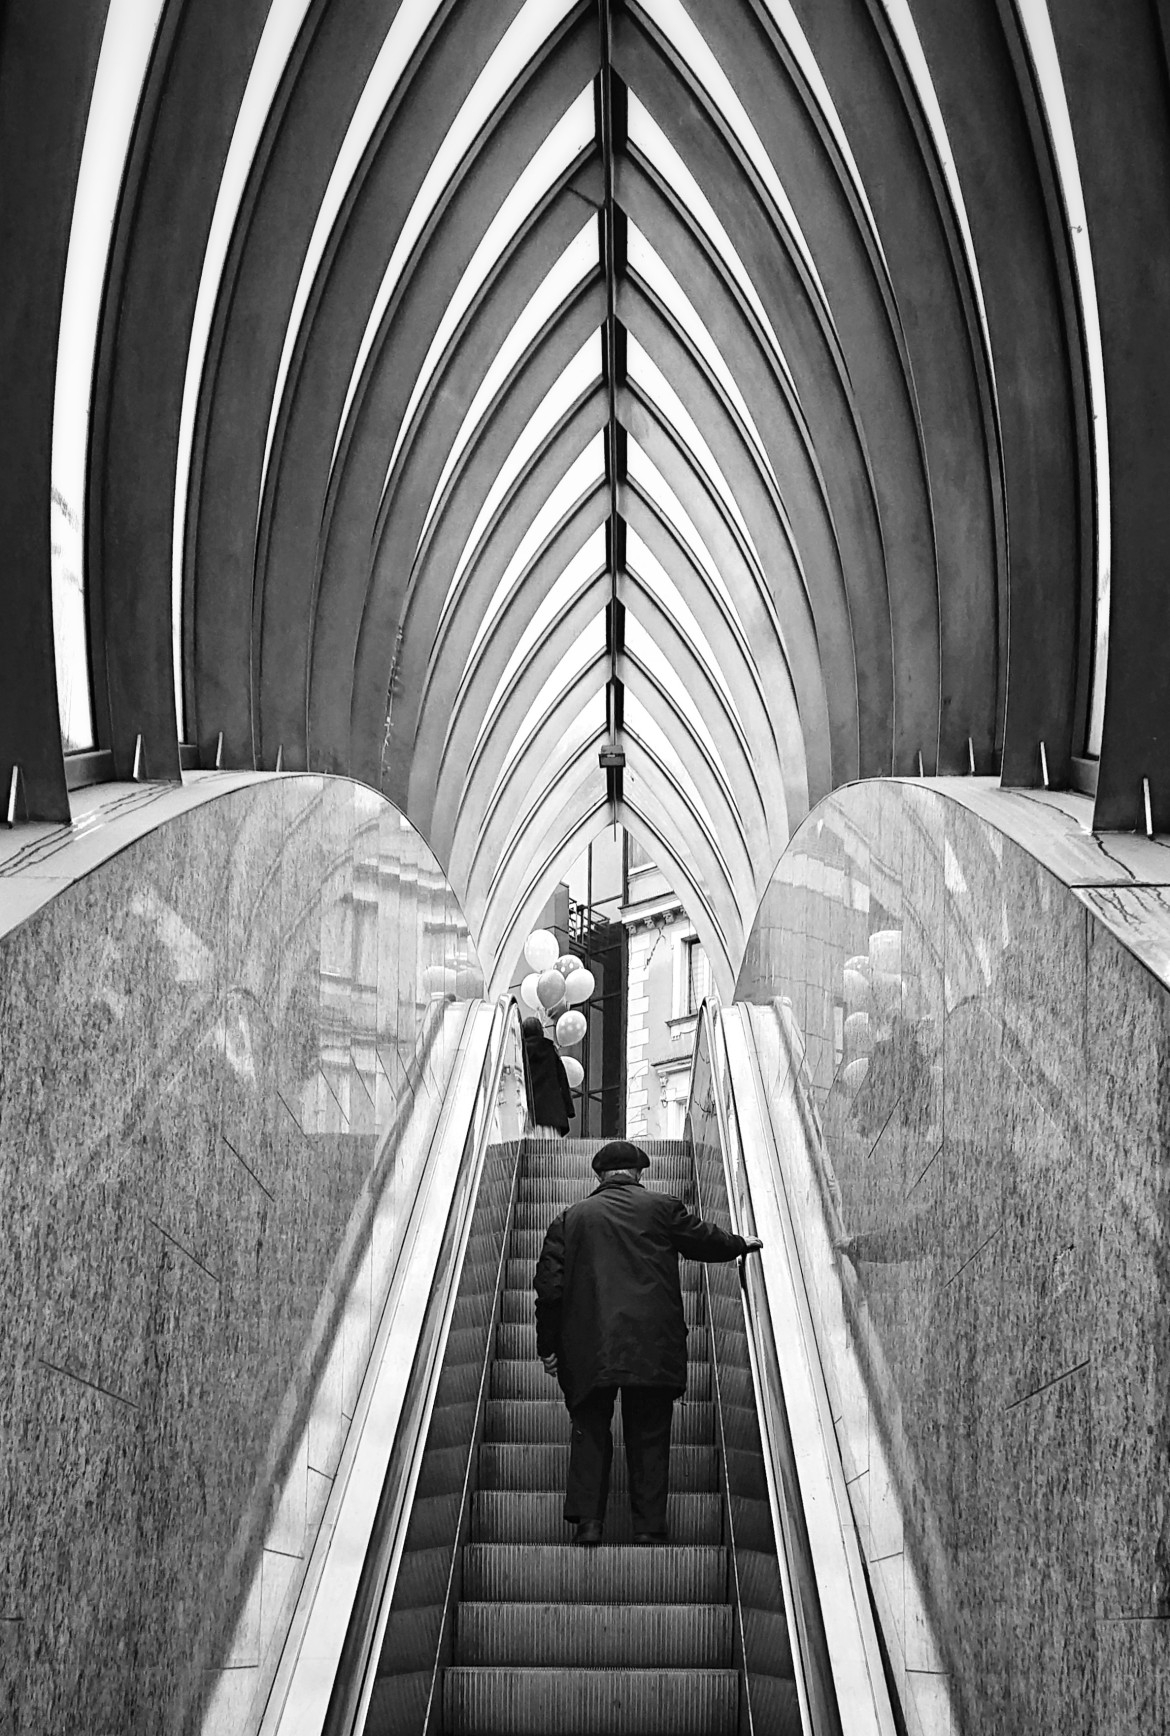 fot. Dominika Koszowska, "Stairway to Heaven", złoty medal w amatorskiej kat. Special/Smartphone Photography / Px3 Prix de la Photographie, Paris